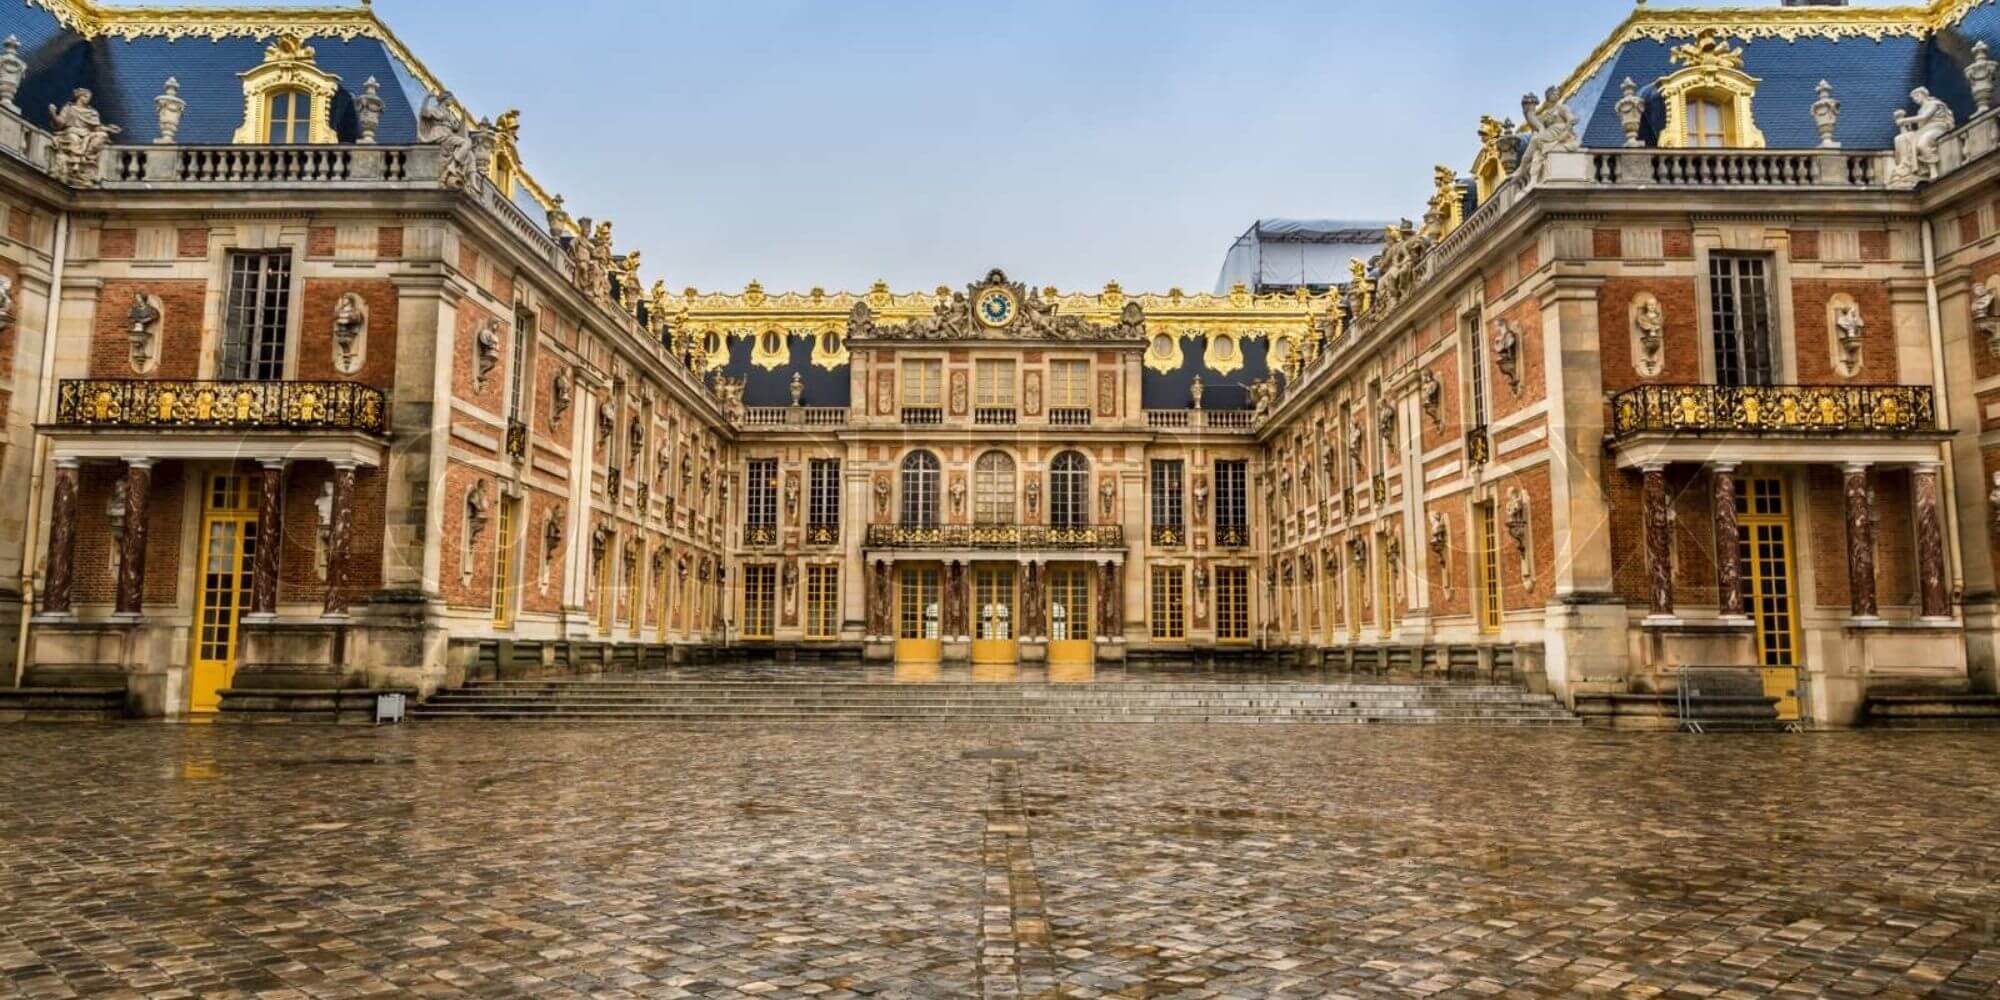 Foredrag om Versailles | FOF Københavns Omegn